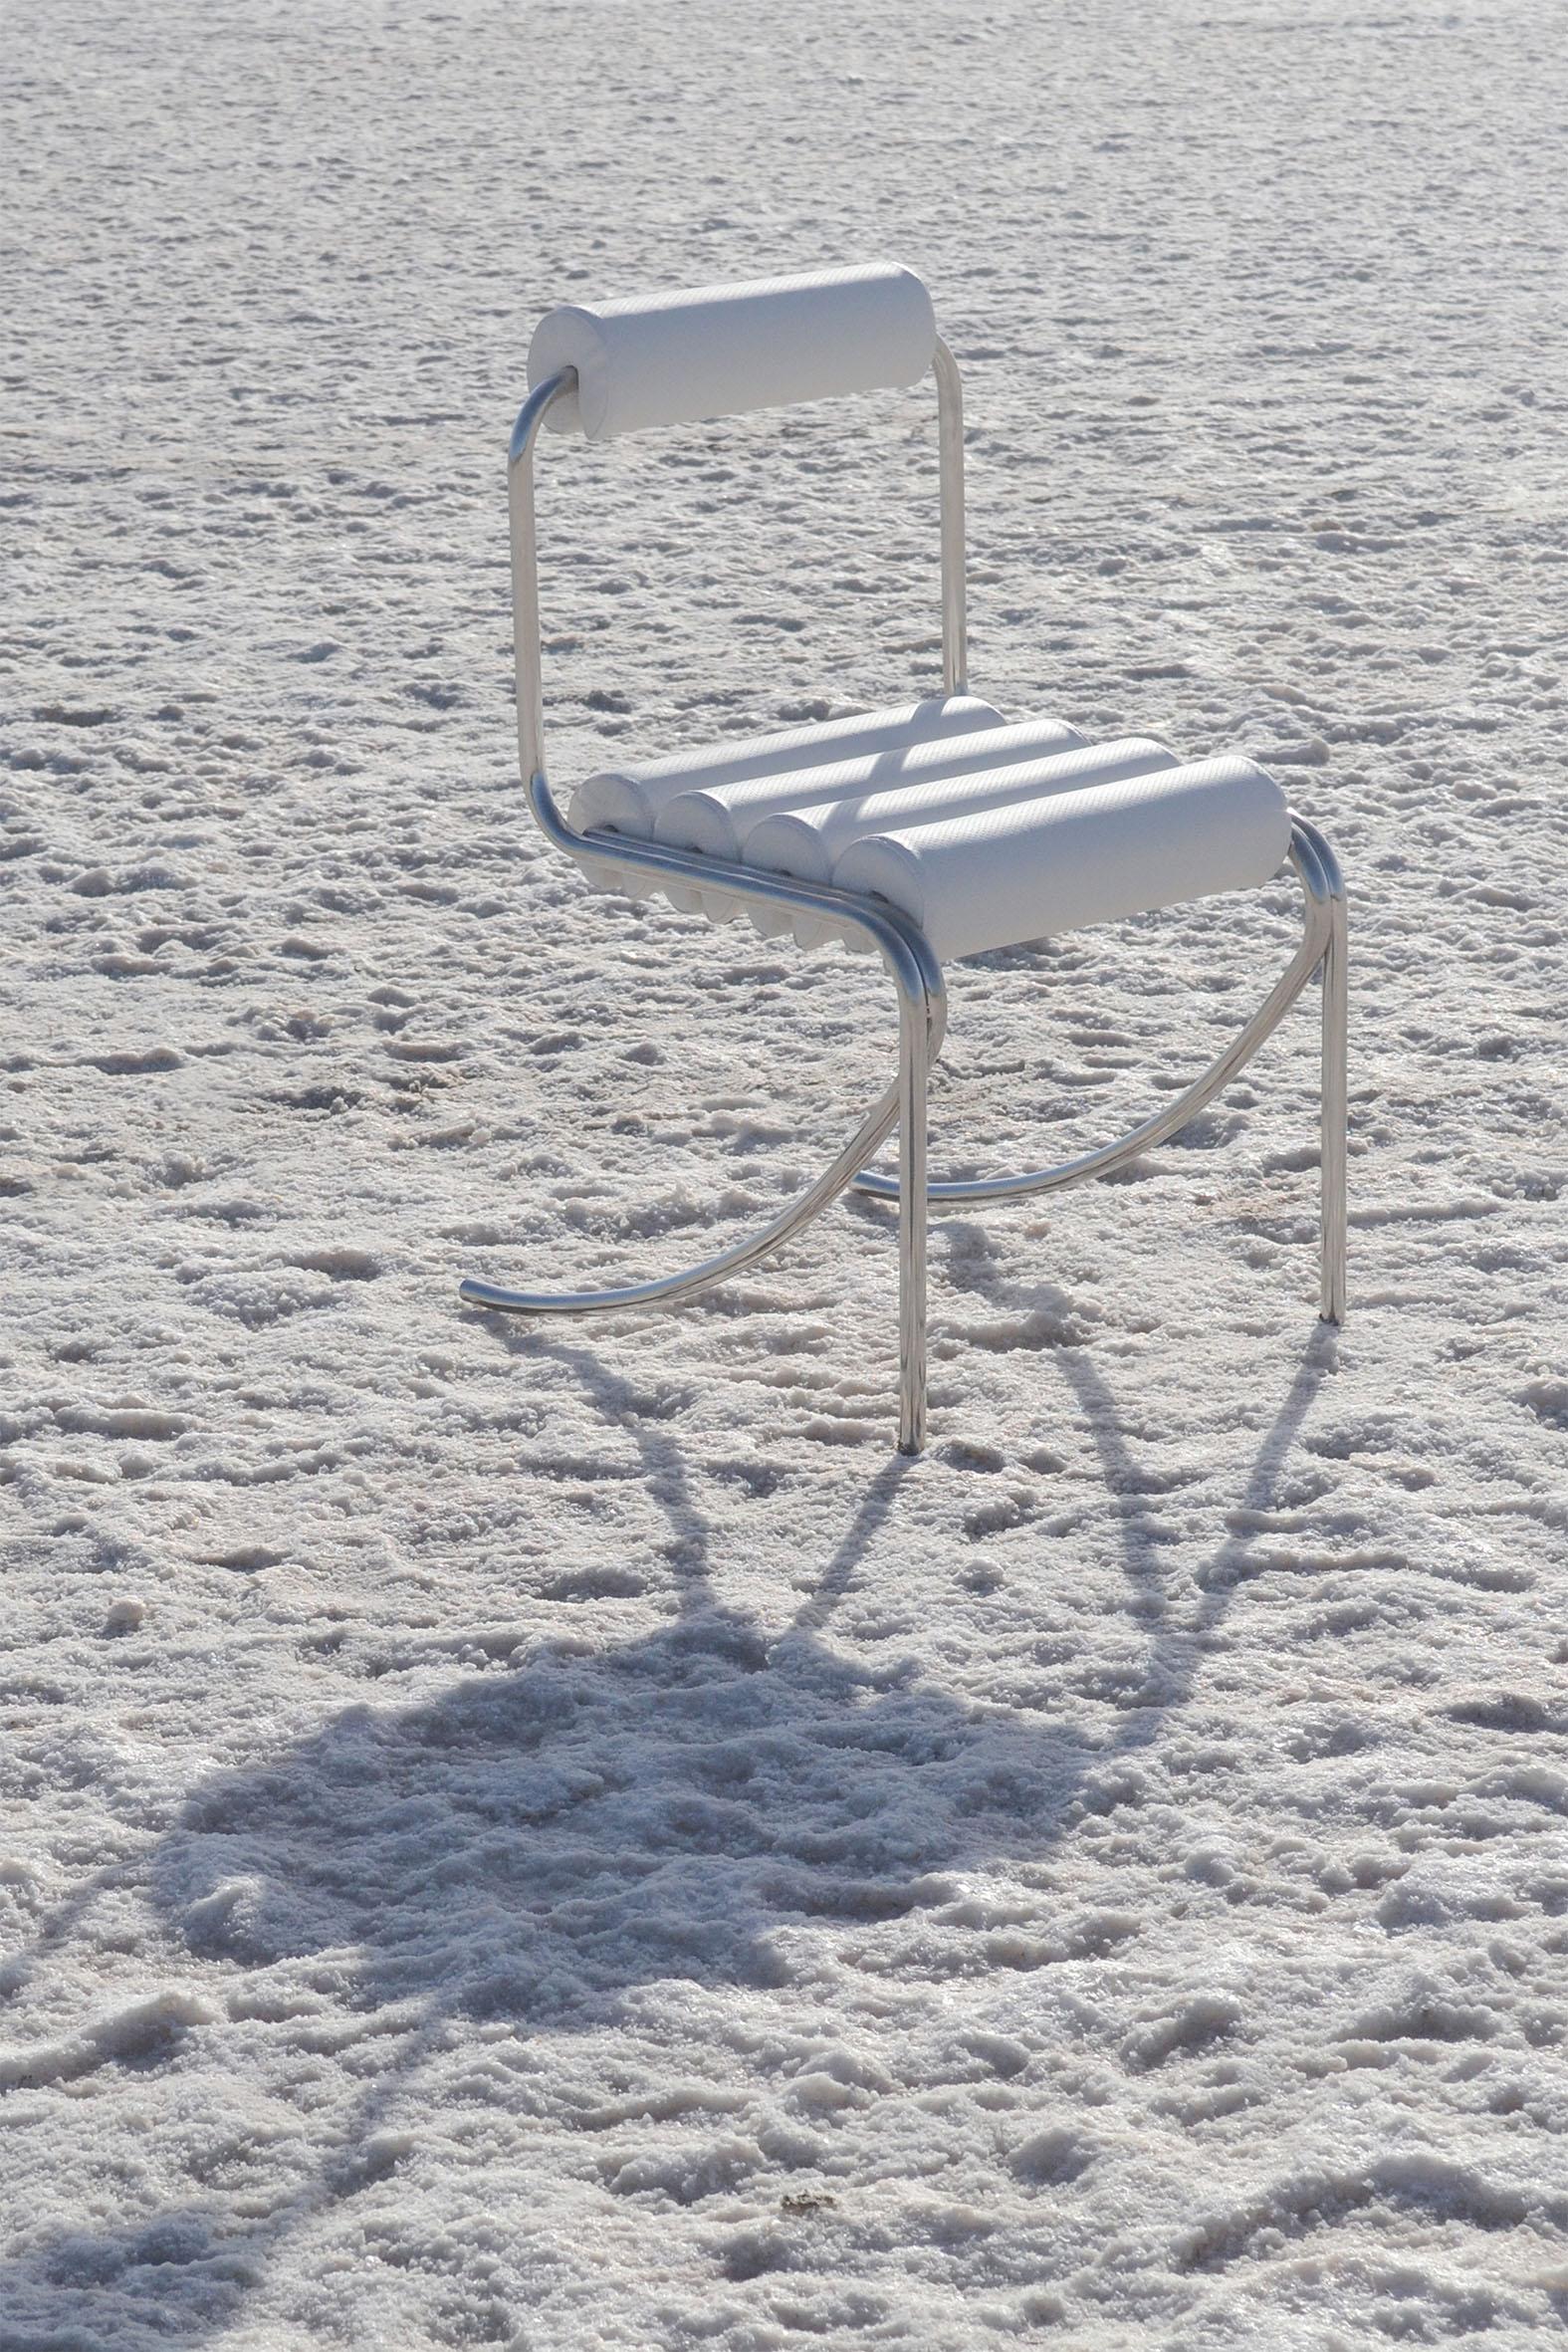 Elegg röhrenförmiger Stuhl B mit geschwungener Rückenlehne von Studio Christinekalia
Abmessungen: B 55 x T 50 x H 85 cm.
MATERIALIEN: Edelstahl, gepolstert mit Marineleder.

Streng in der Erscheinung, aber freundlich zum menschlichen Körper, folgt